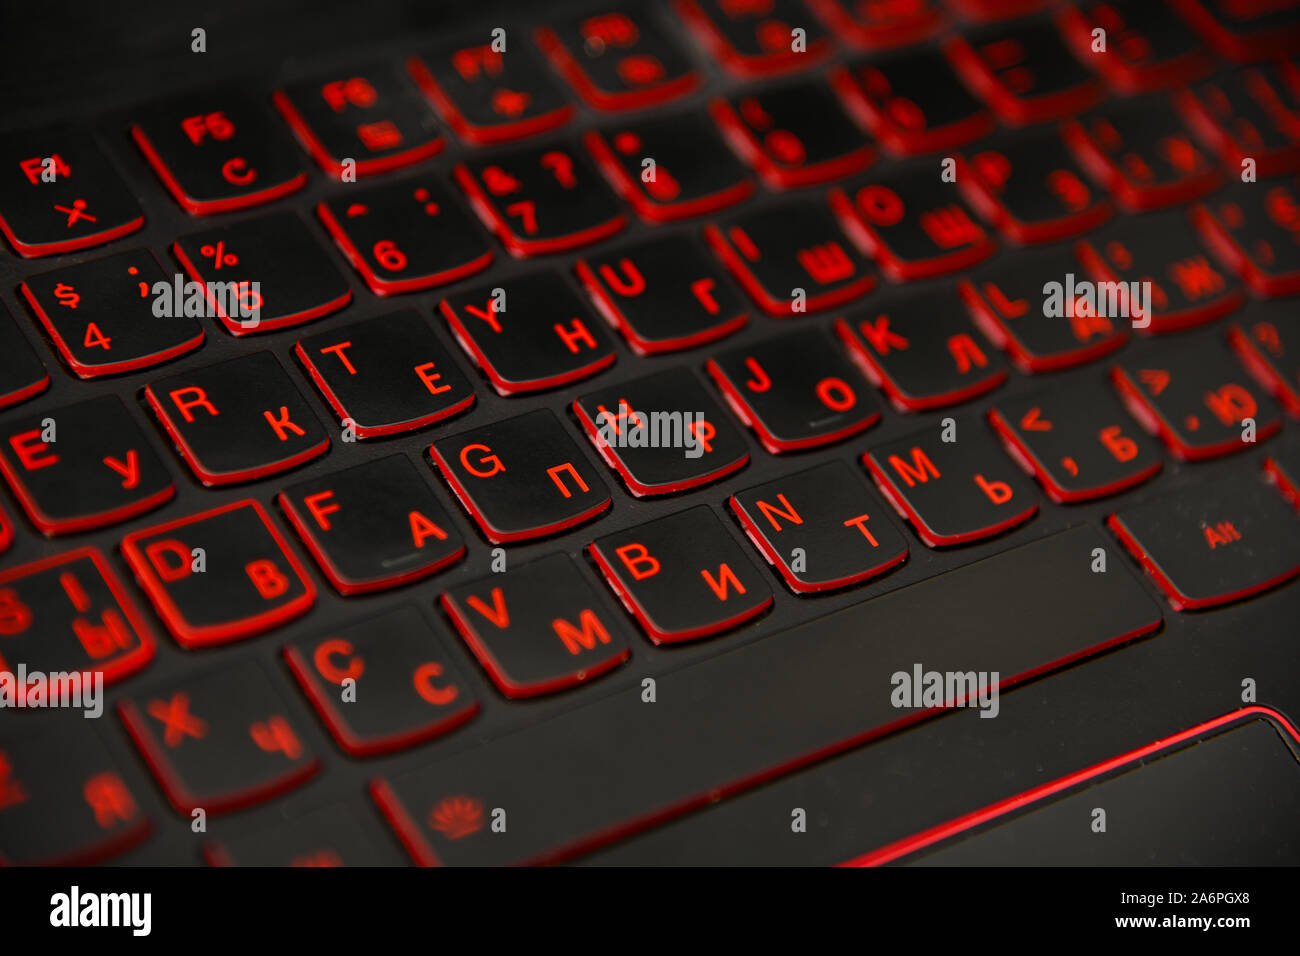 Schließen Sie die rote led Hintergrundbeleuchtete Computer Laptop Tastatur  Tastatur mit dual Alphabet, Englisch und Kyrillisch, hohe  Betrachtungswinkel Stockfotografie - Alamy